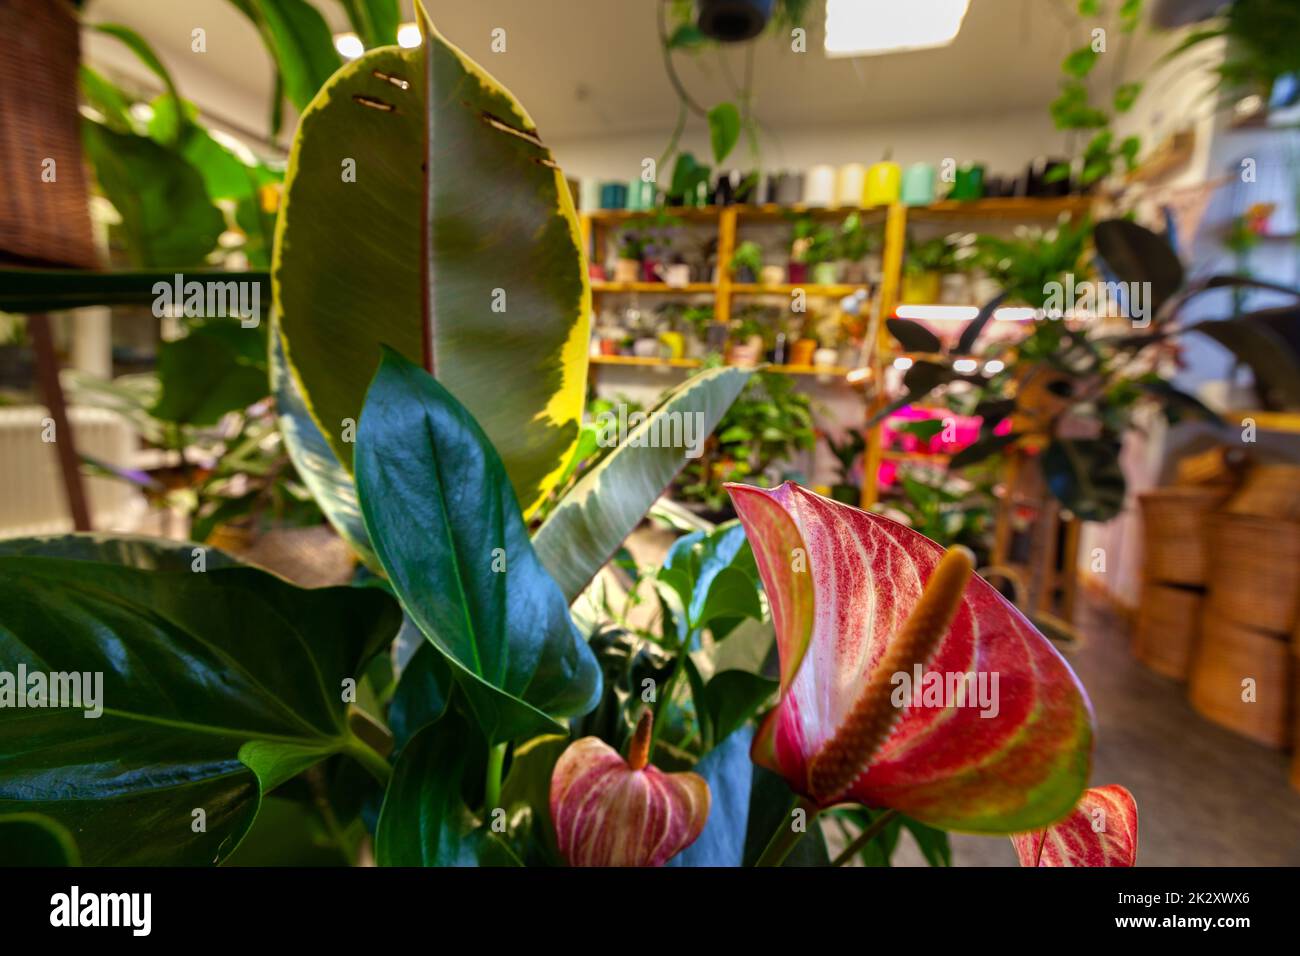 Une image d'une boutique de fleurs avec des plantes en pot exotiques. Banque D'Images